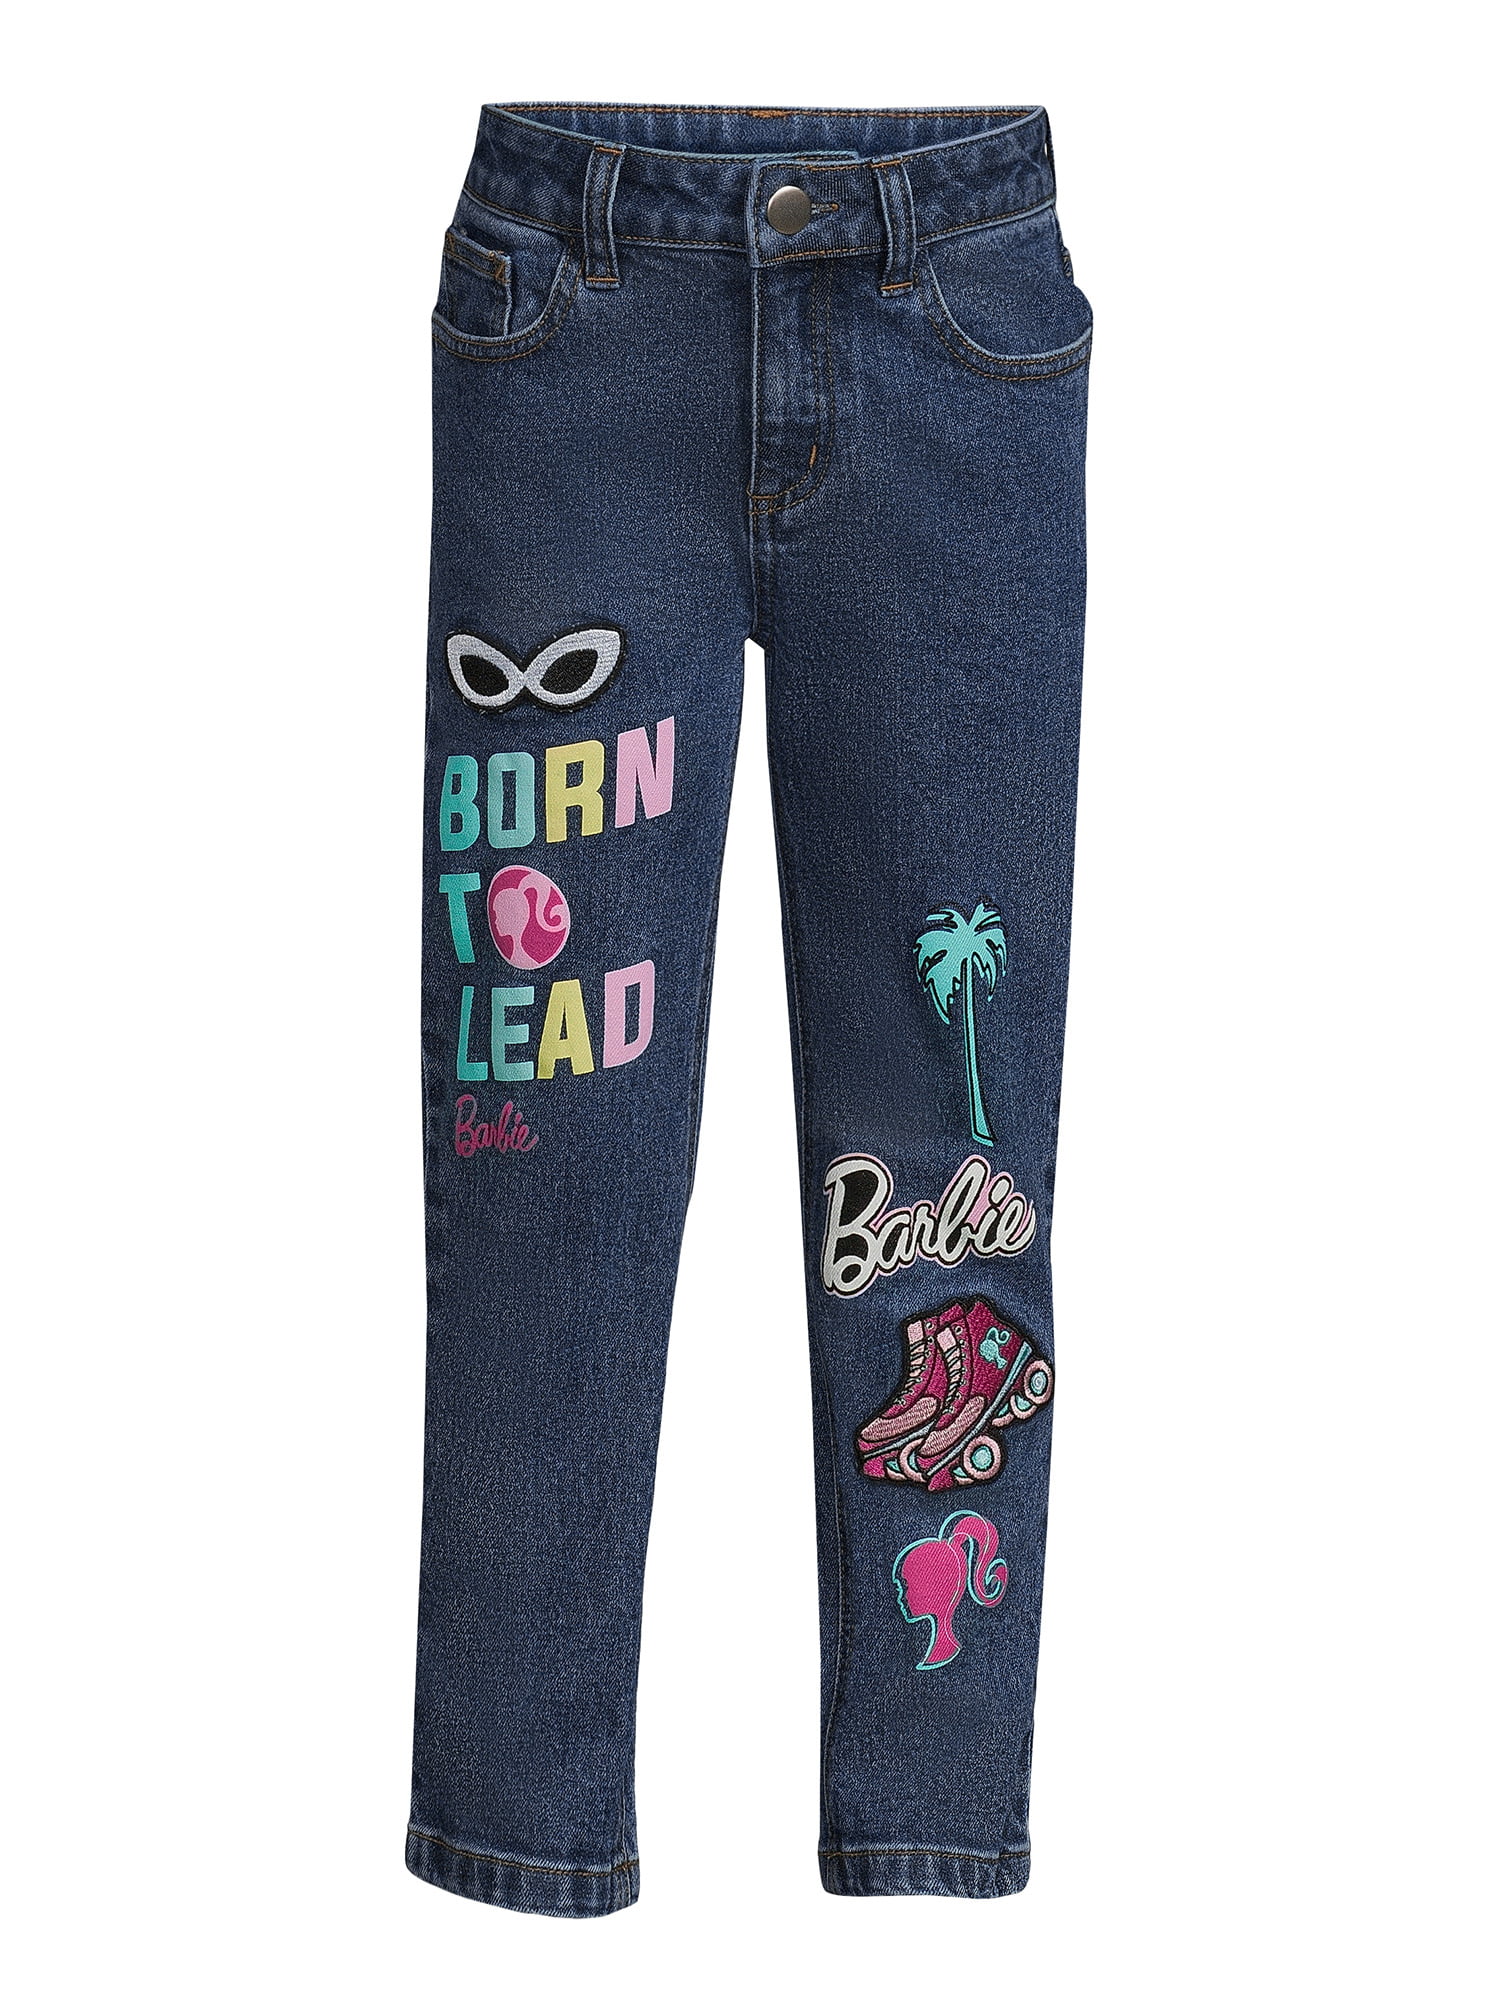 Barbie Girls Denim Jeans, Sizes 5-18